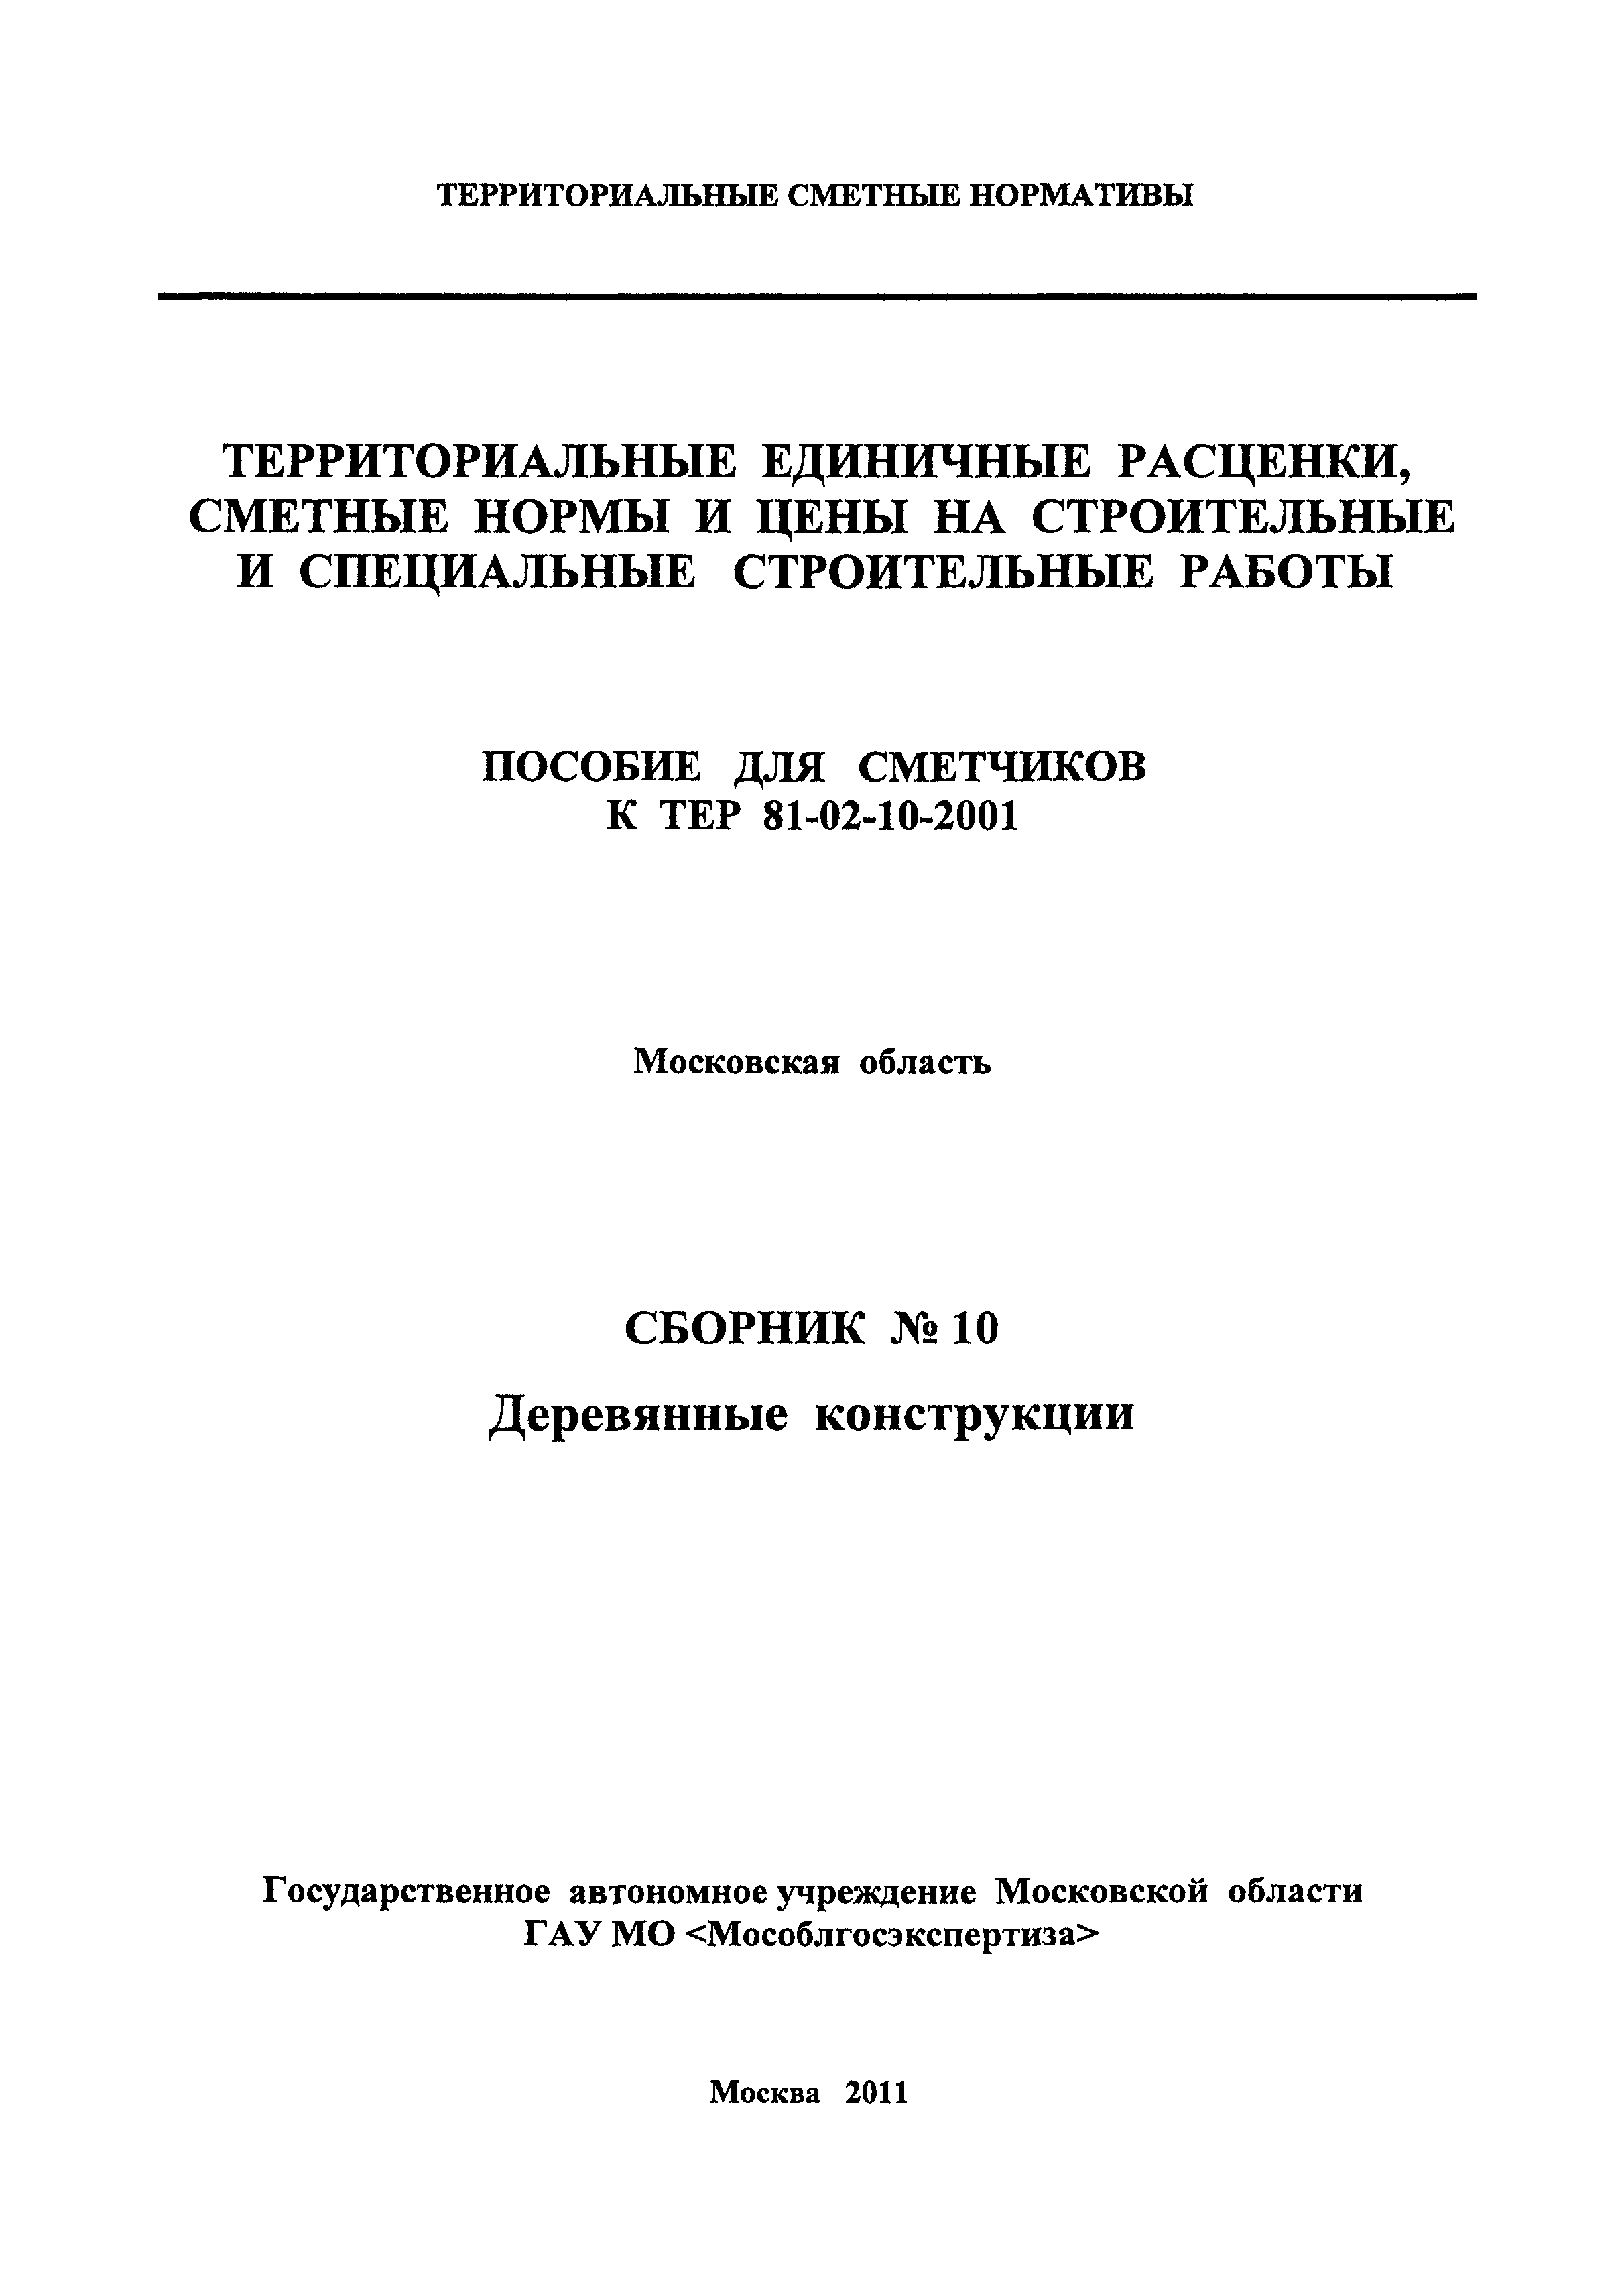 ГЭСНПиТЕР 2001-10 Московской области